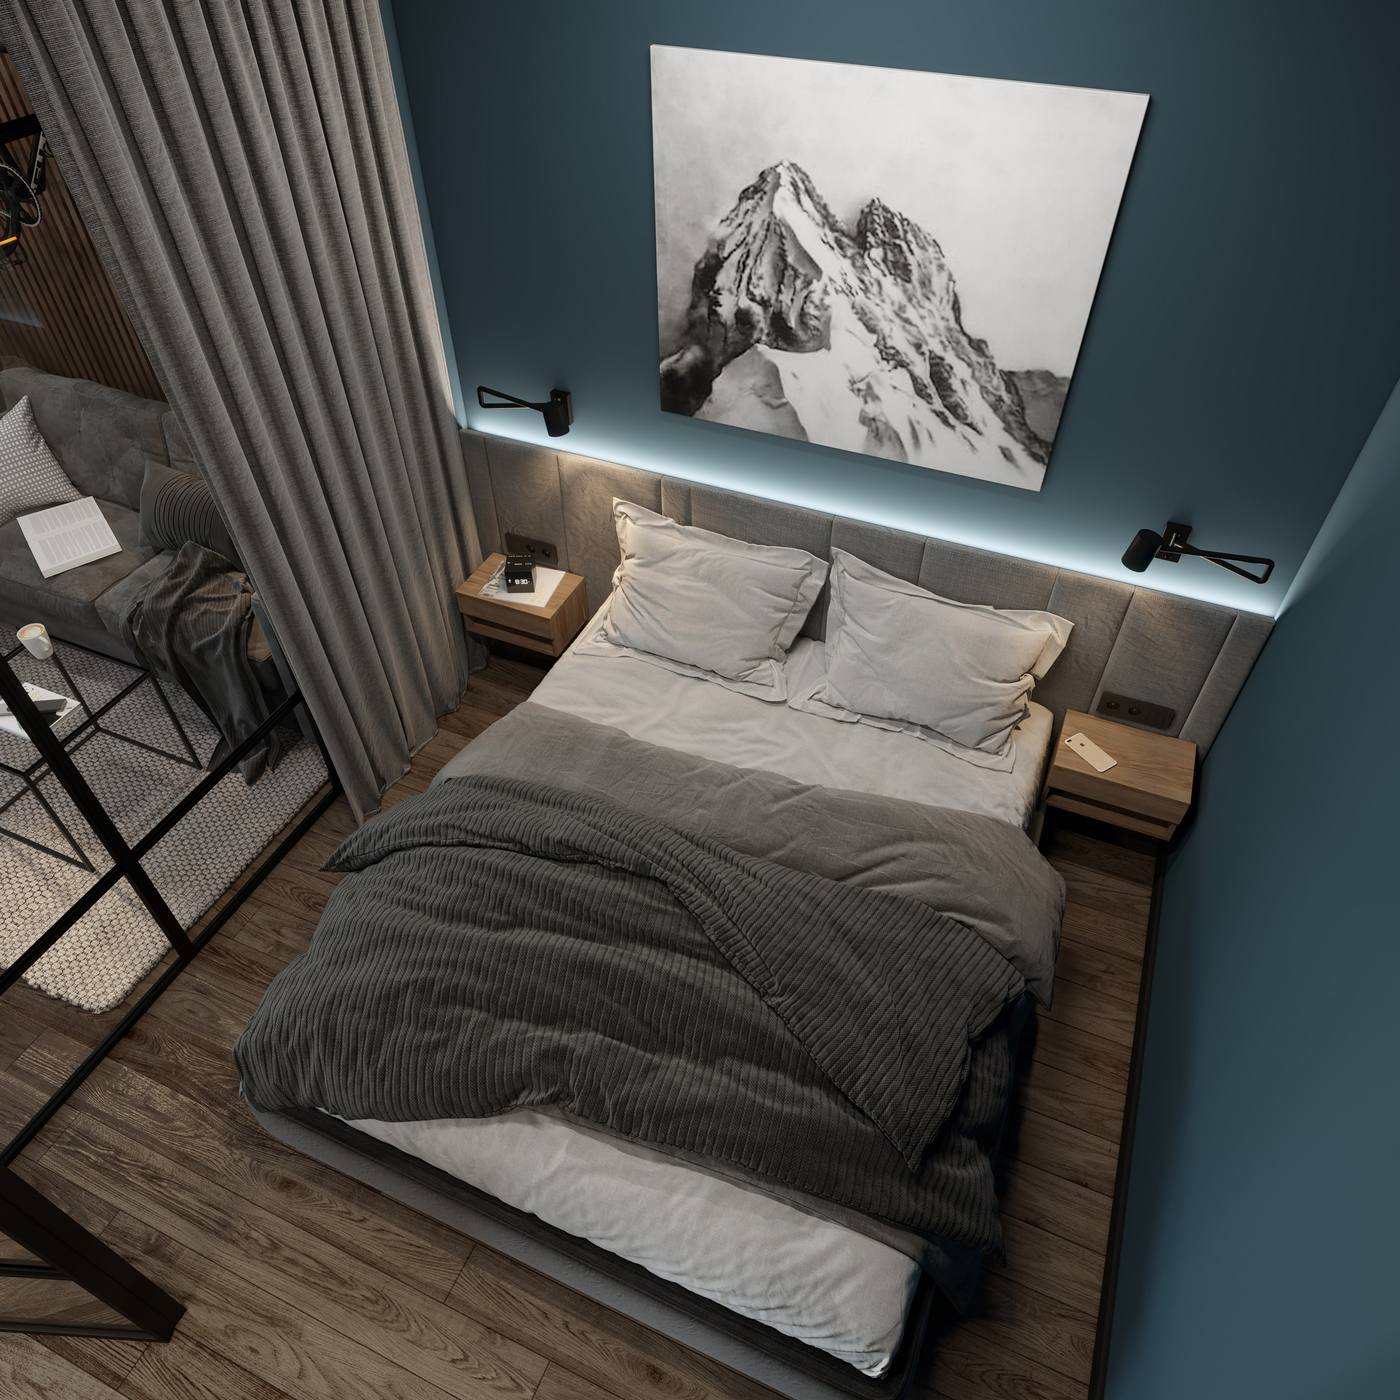 Hình ảnh phòng ngủ với góc chụp từ trên cao, có thể thấy giường ngủ được bố trí ở trung tâm. Đèn gắn tường và táp đầu giường bằng gỗ bố trí đối xứng nhau tạo cho không gian vẻ cân đối, hài hòa.